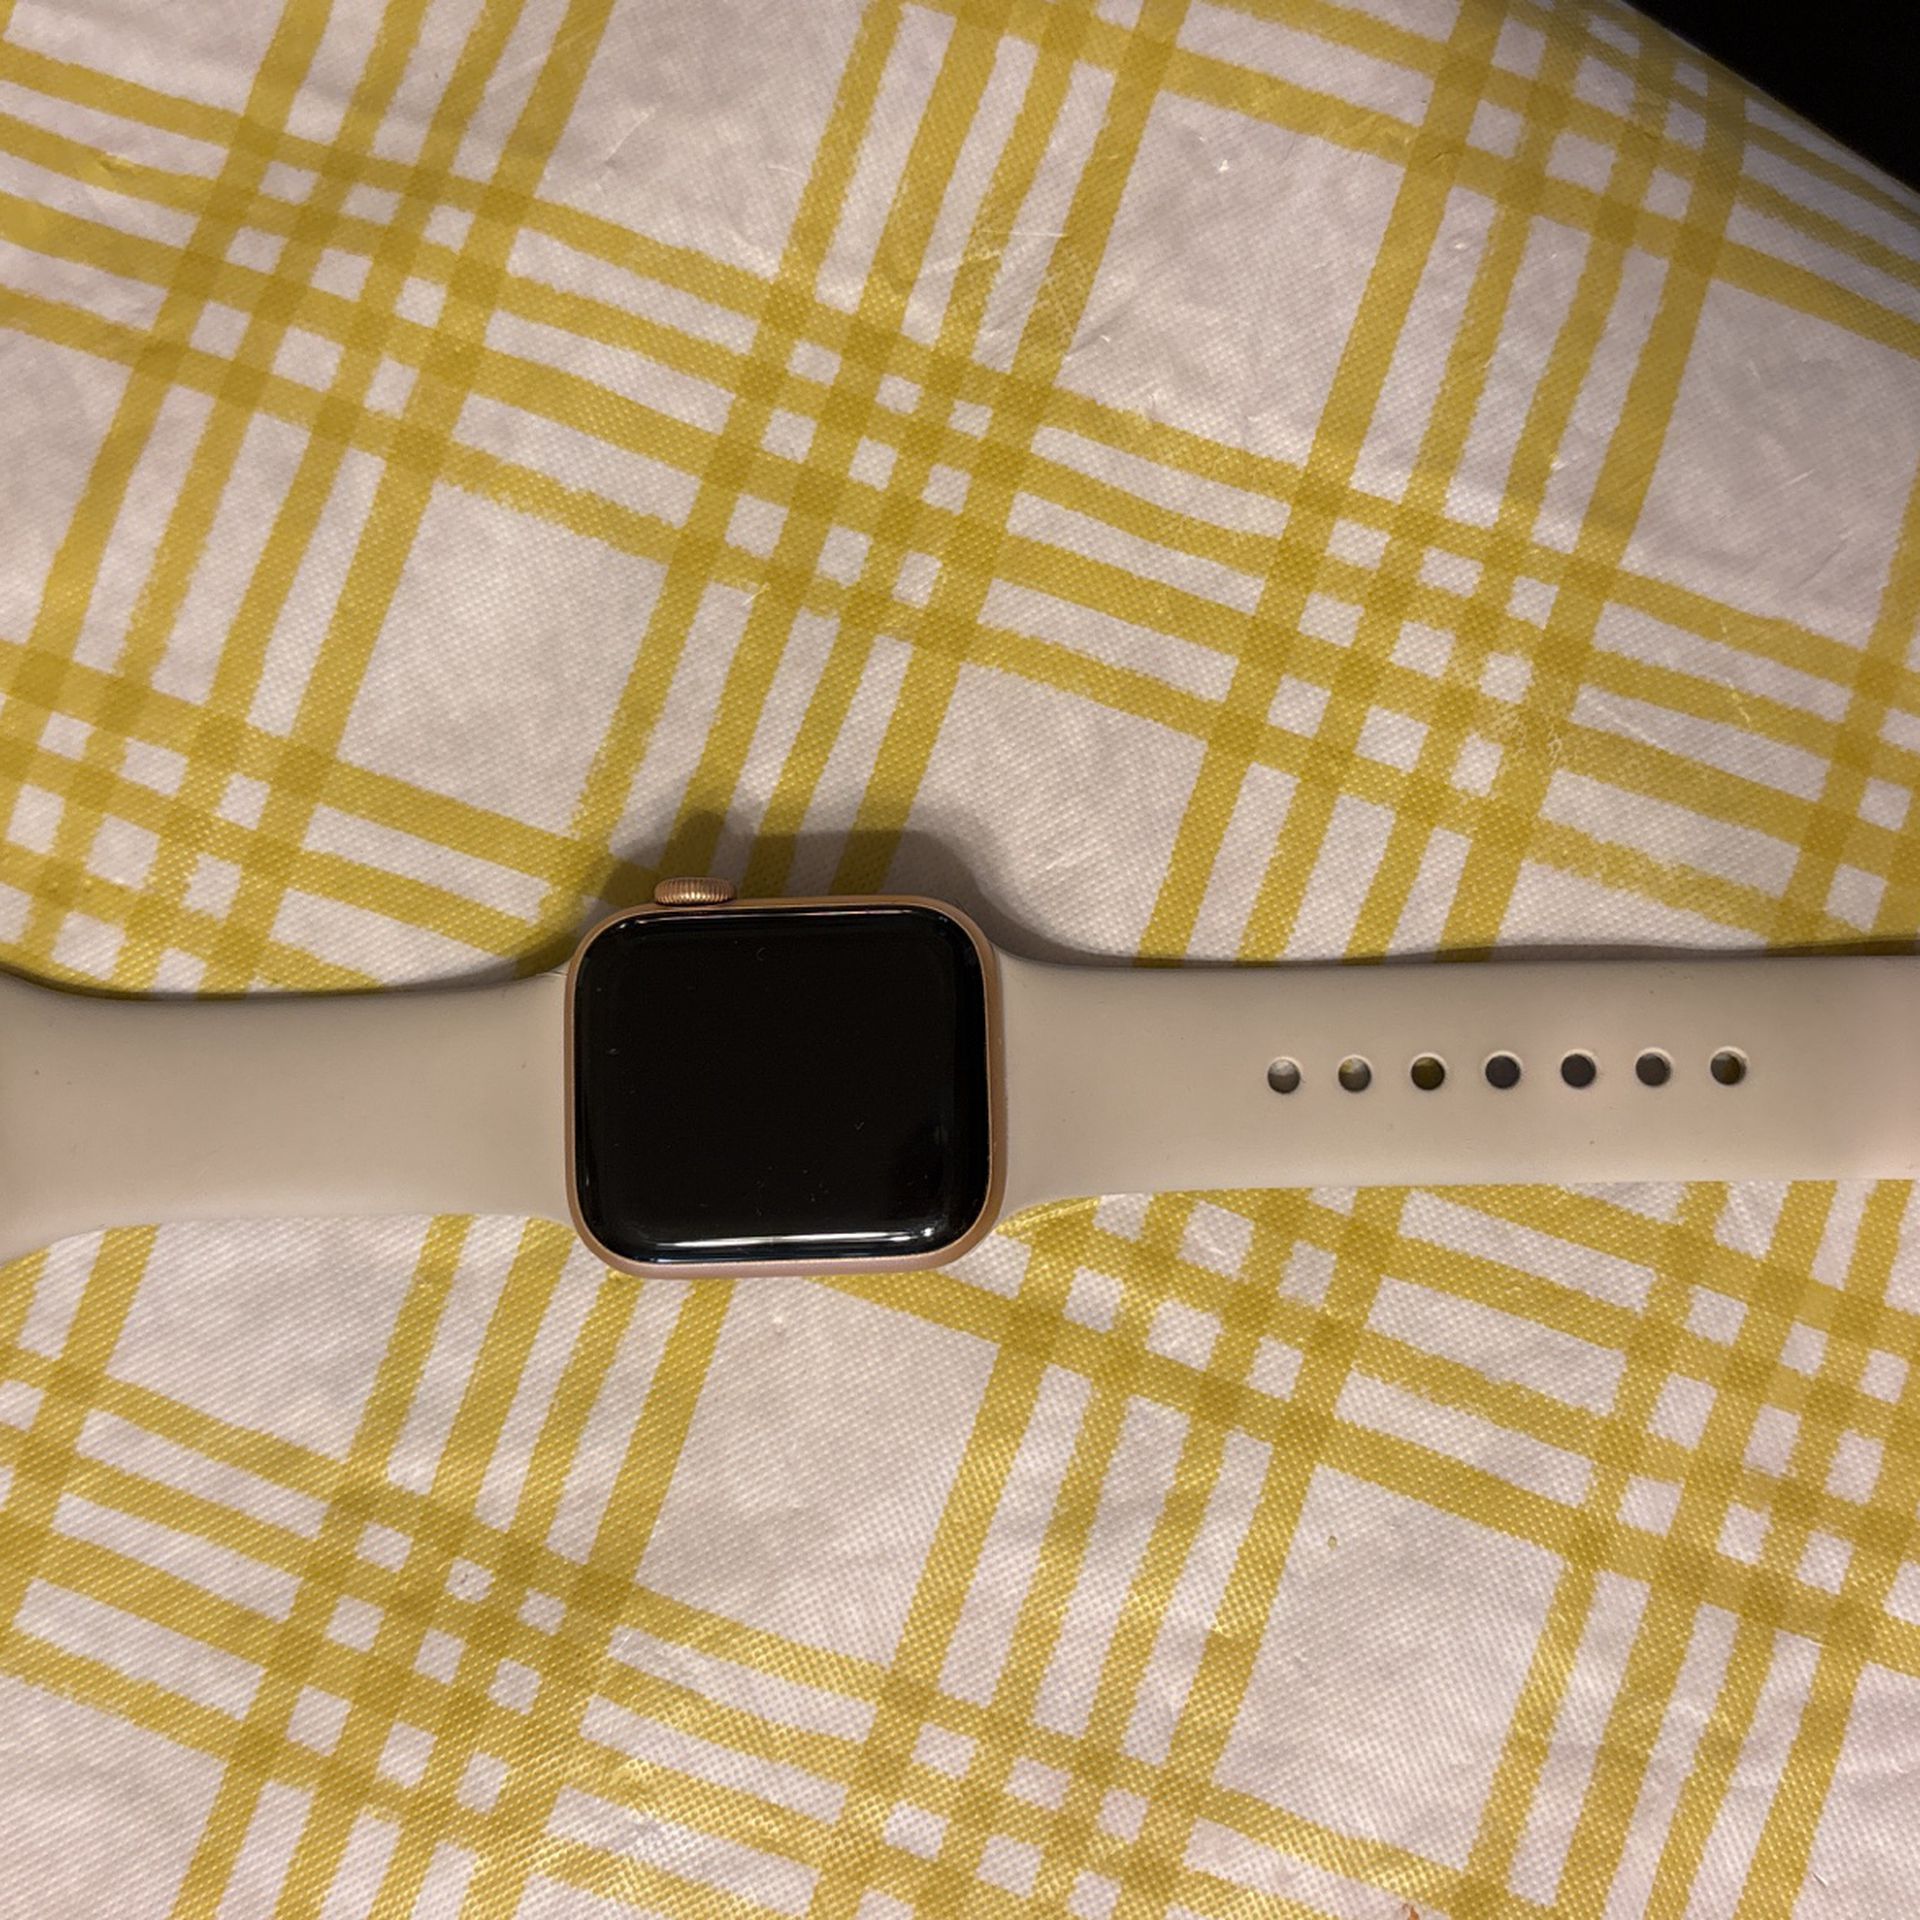 Apple Watch SE 